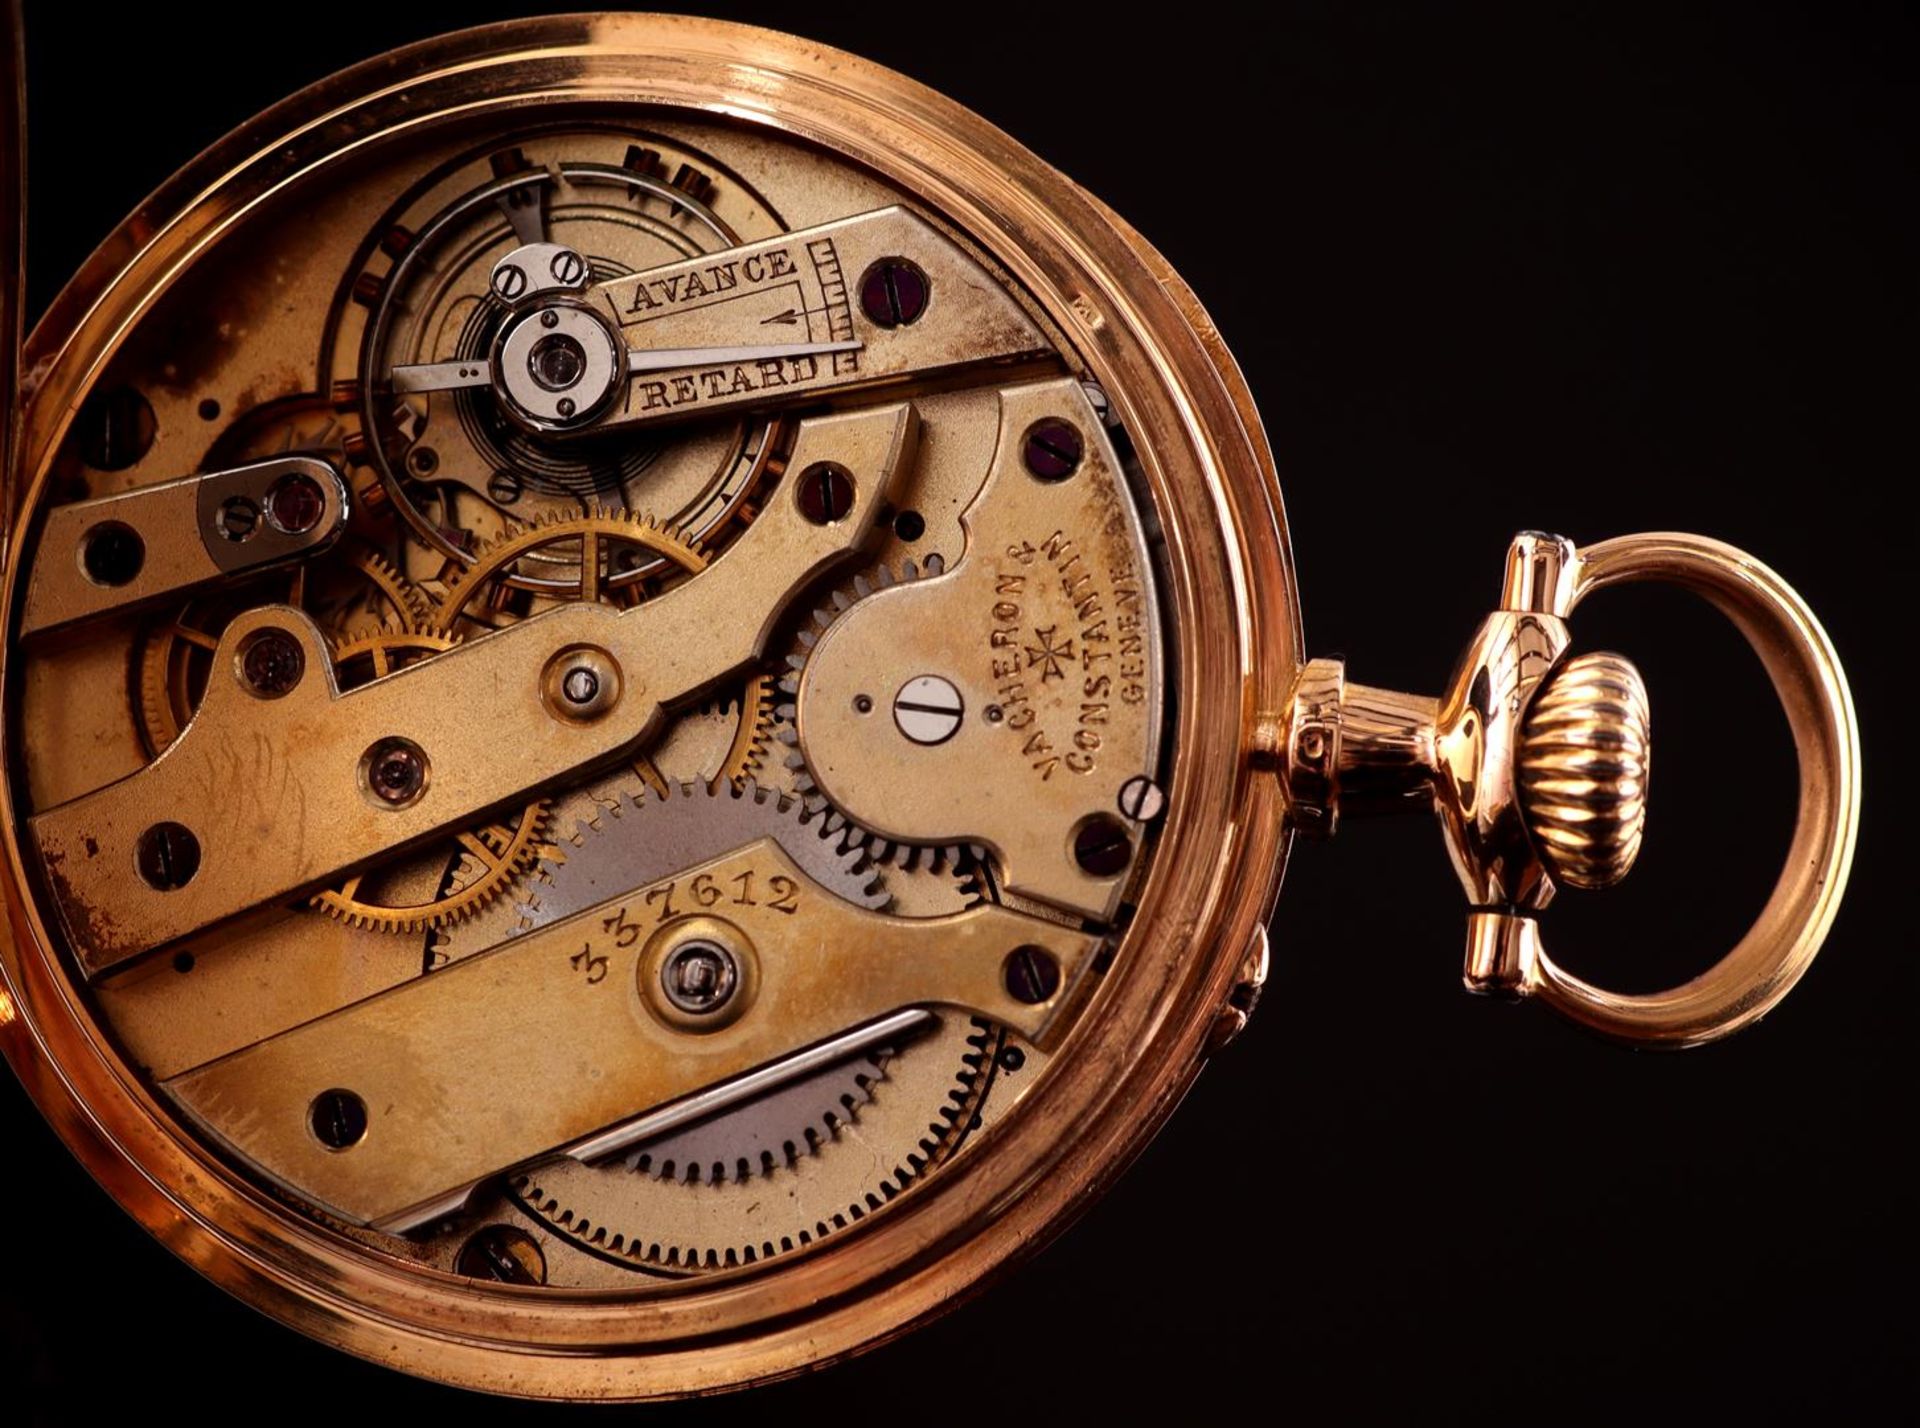 Vacheron & Constantin Genève pocket watch - Image 4 of 4